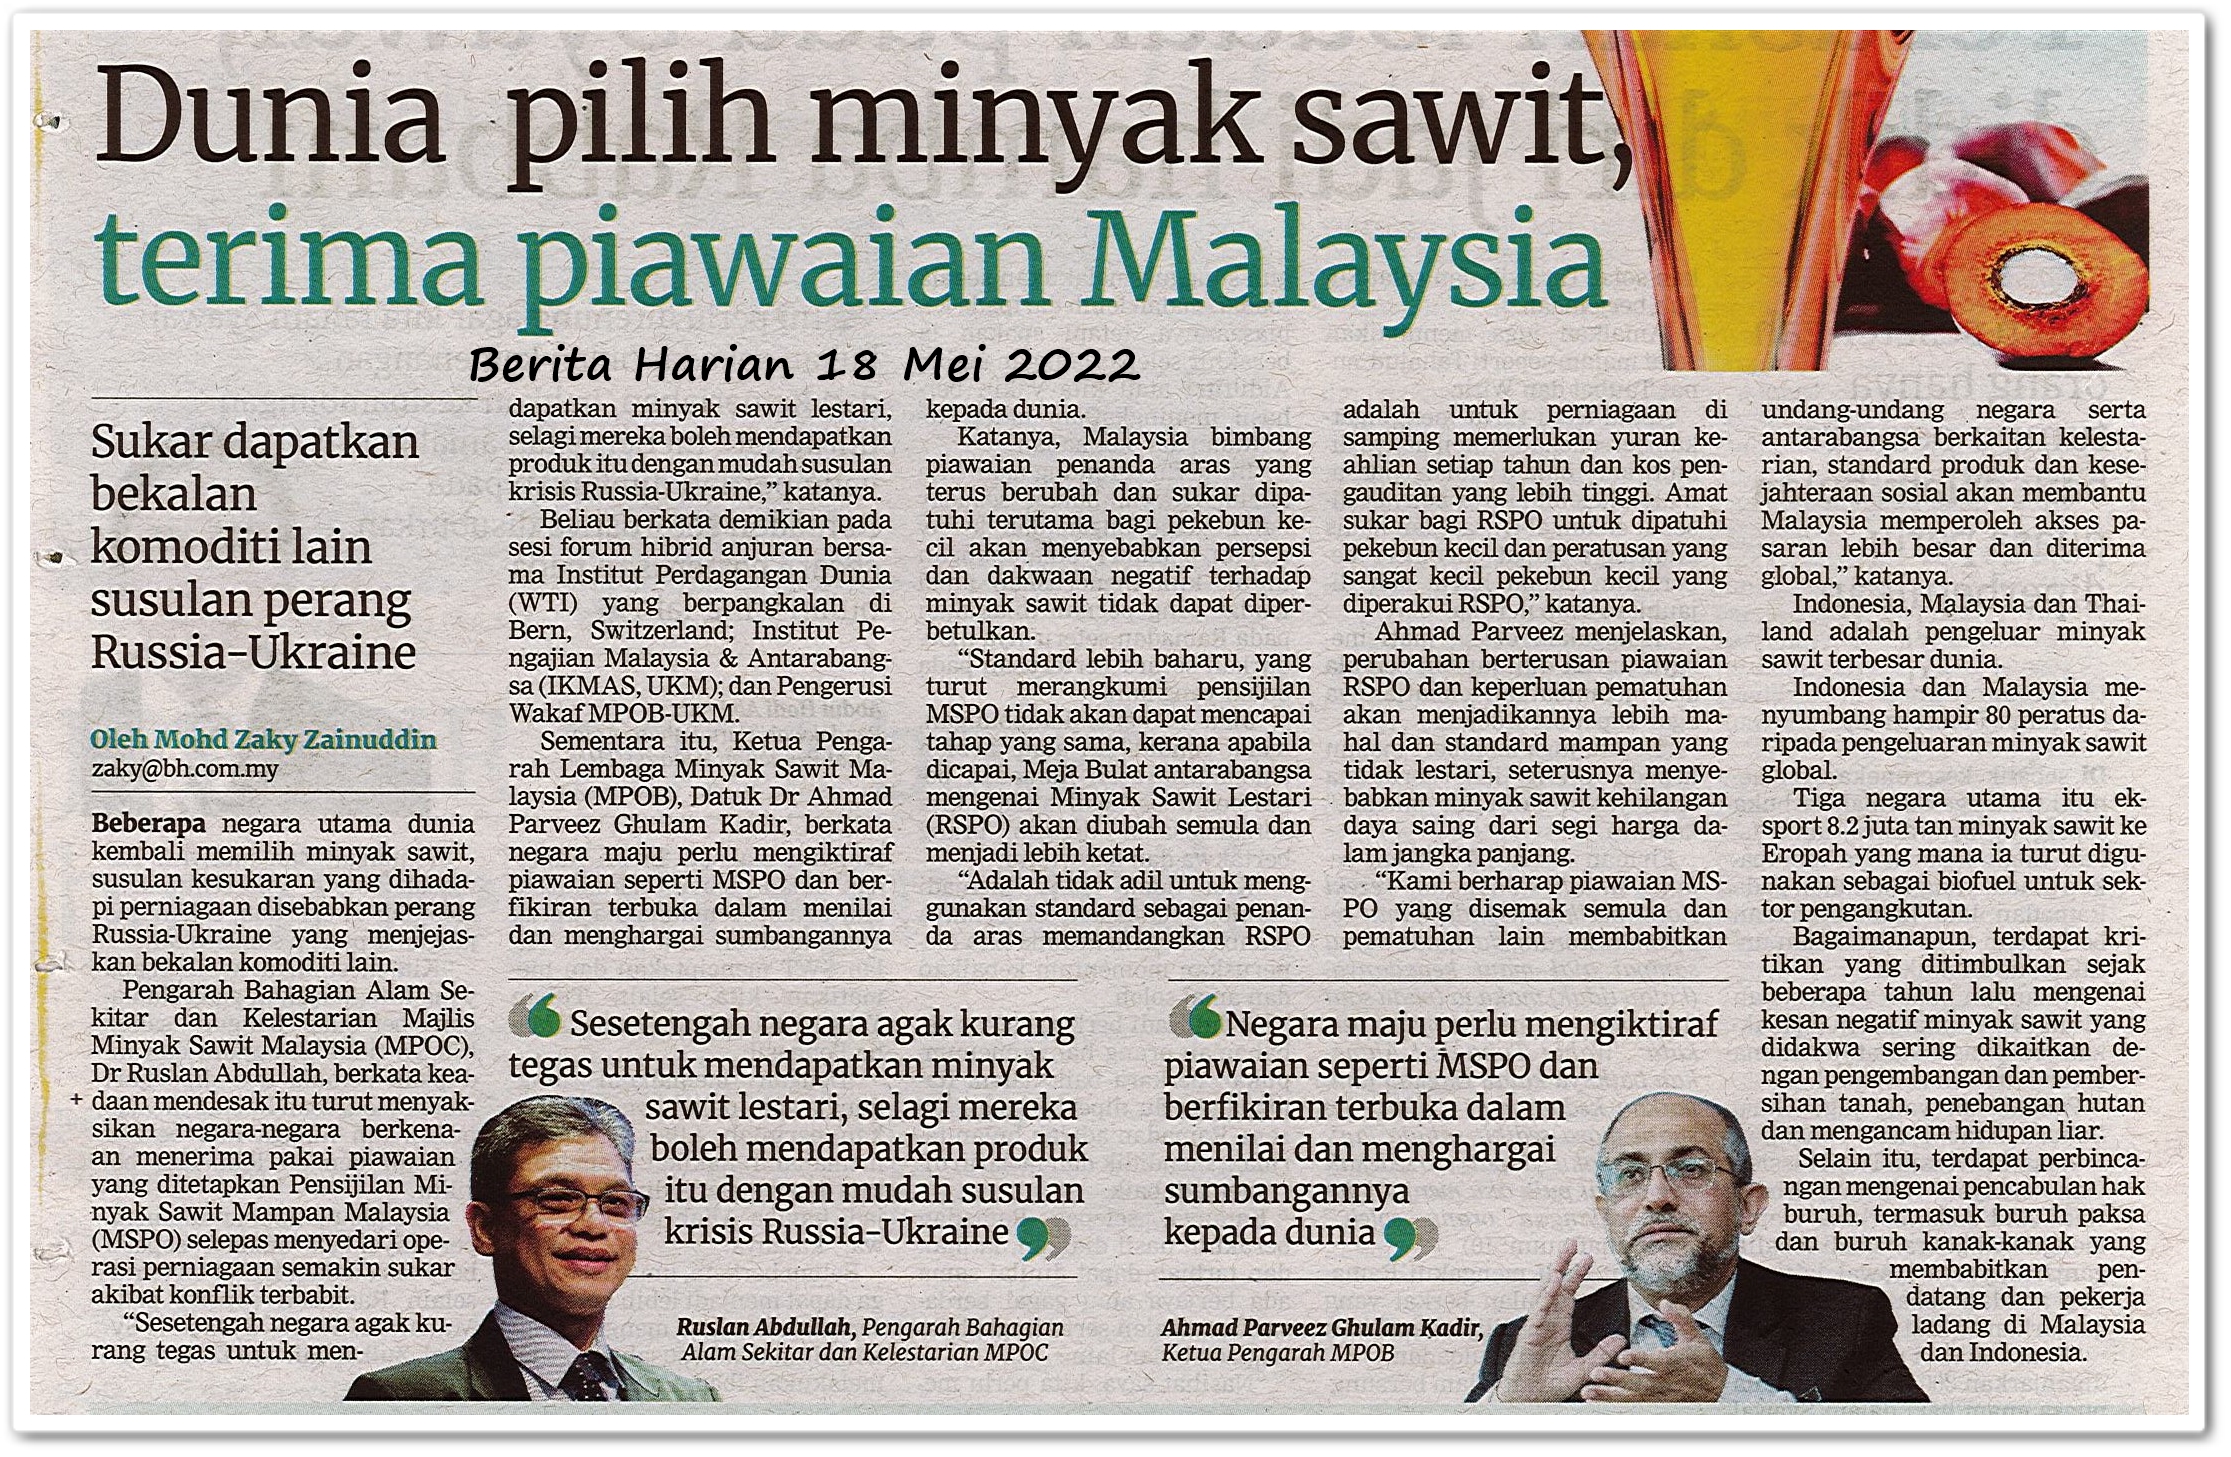 Dunia pilih minyak sawit, terima piawaian Malaysia - Keratan akhbar Berita Harian 18 Mei 2022